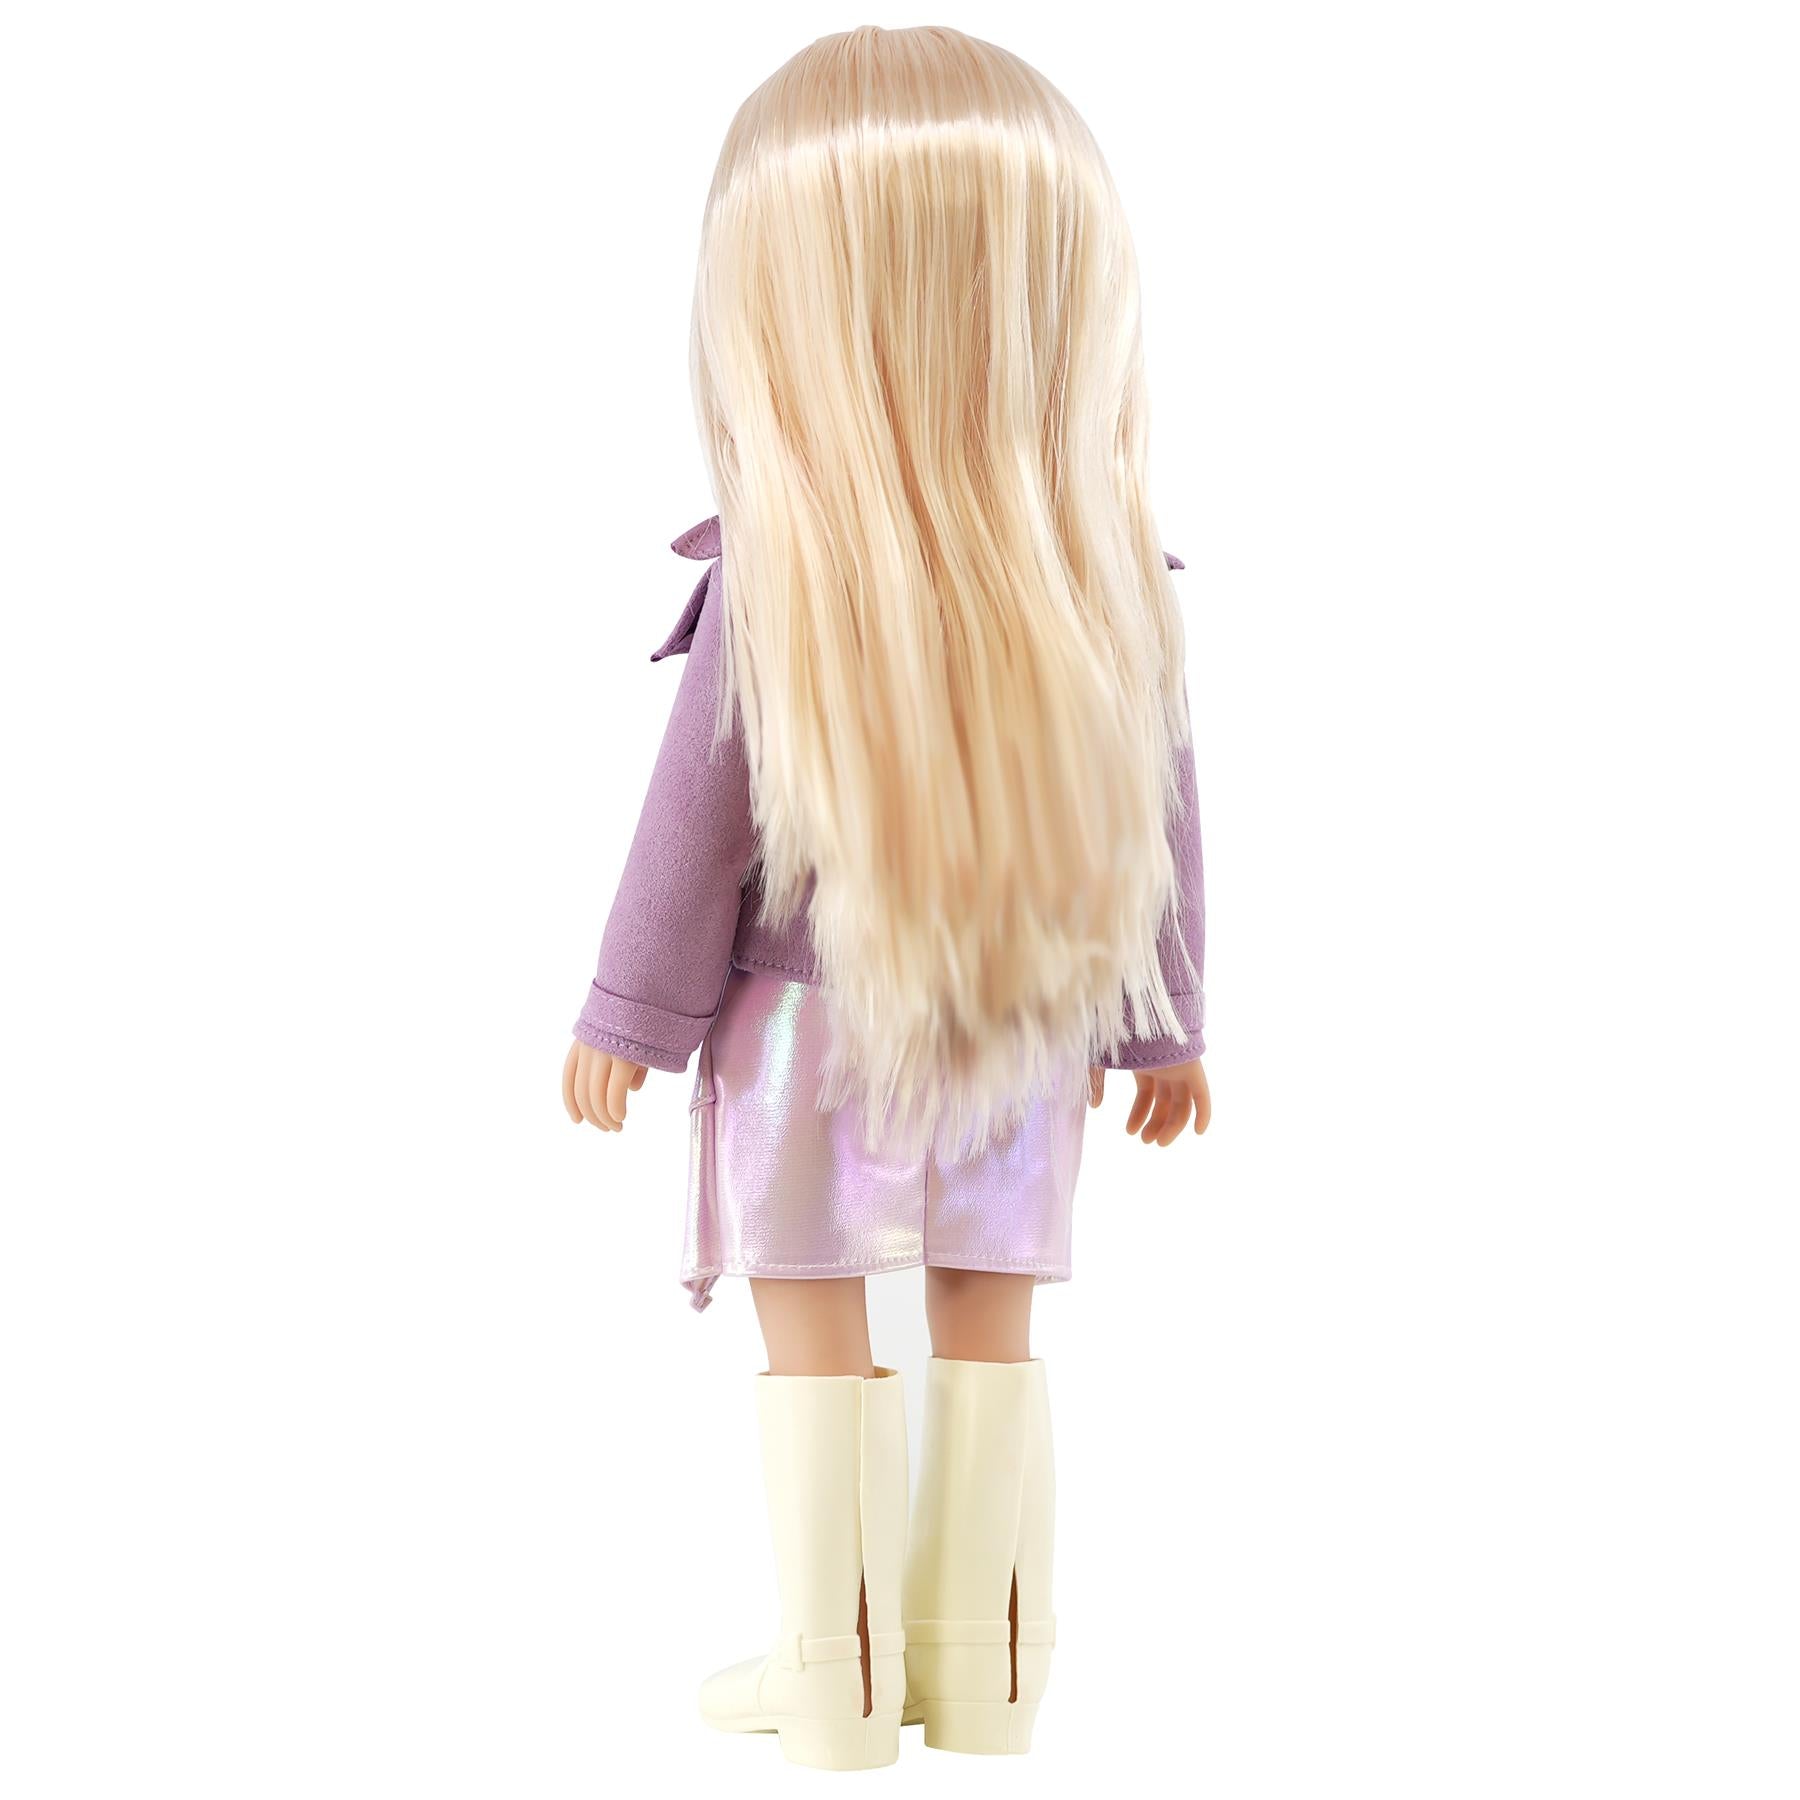 BiBi Doll Doll BiBi Fashion Doll "ASHLEY" (47 cm / 18")